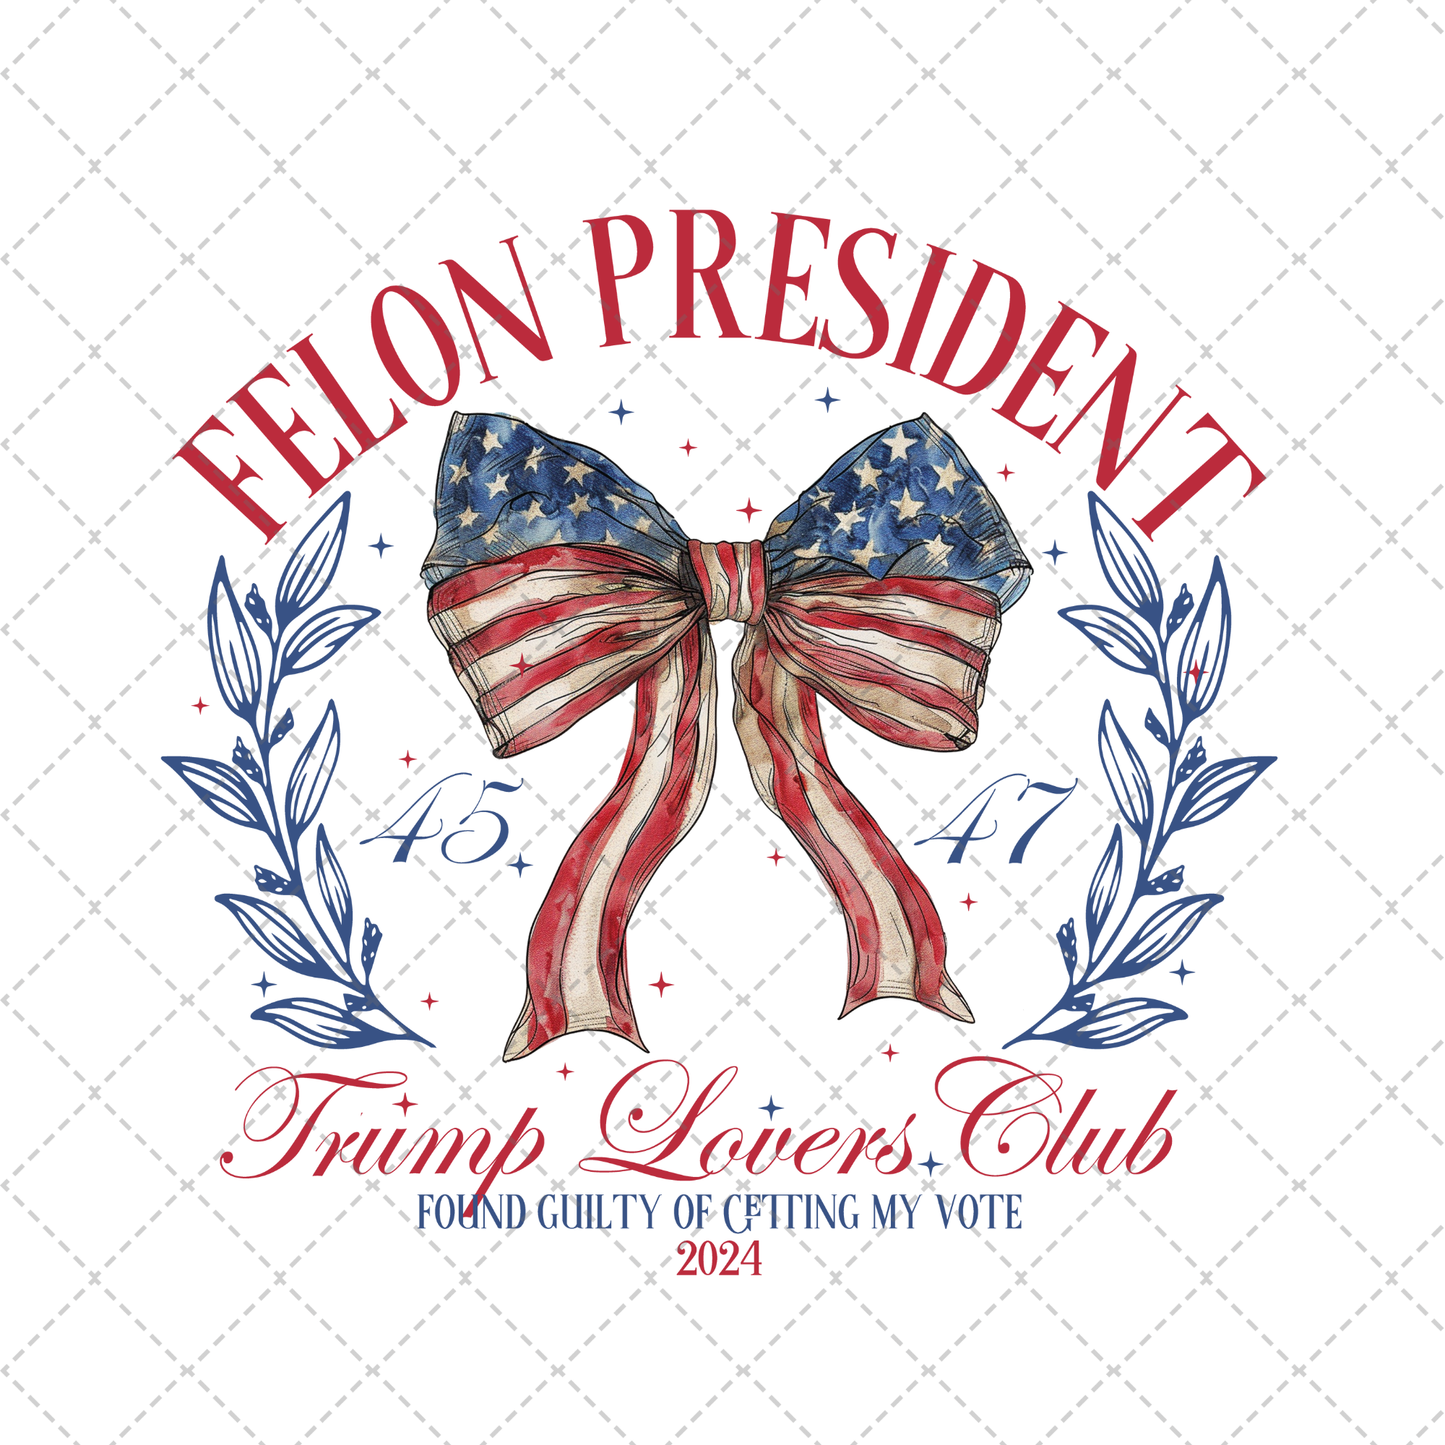 Felon President Transfer